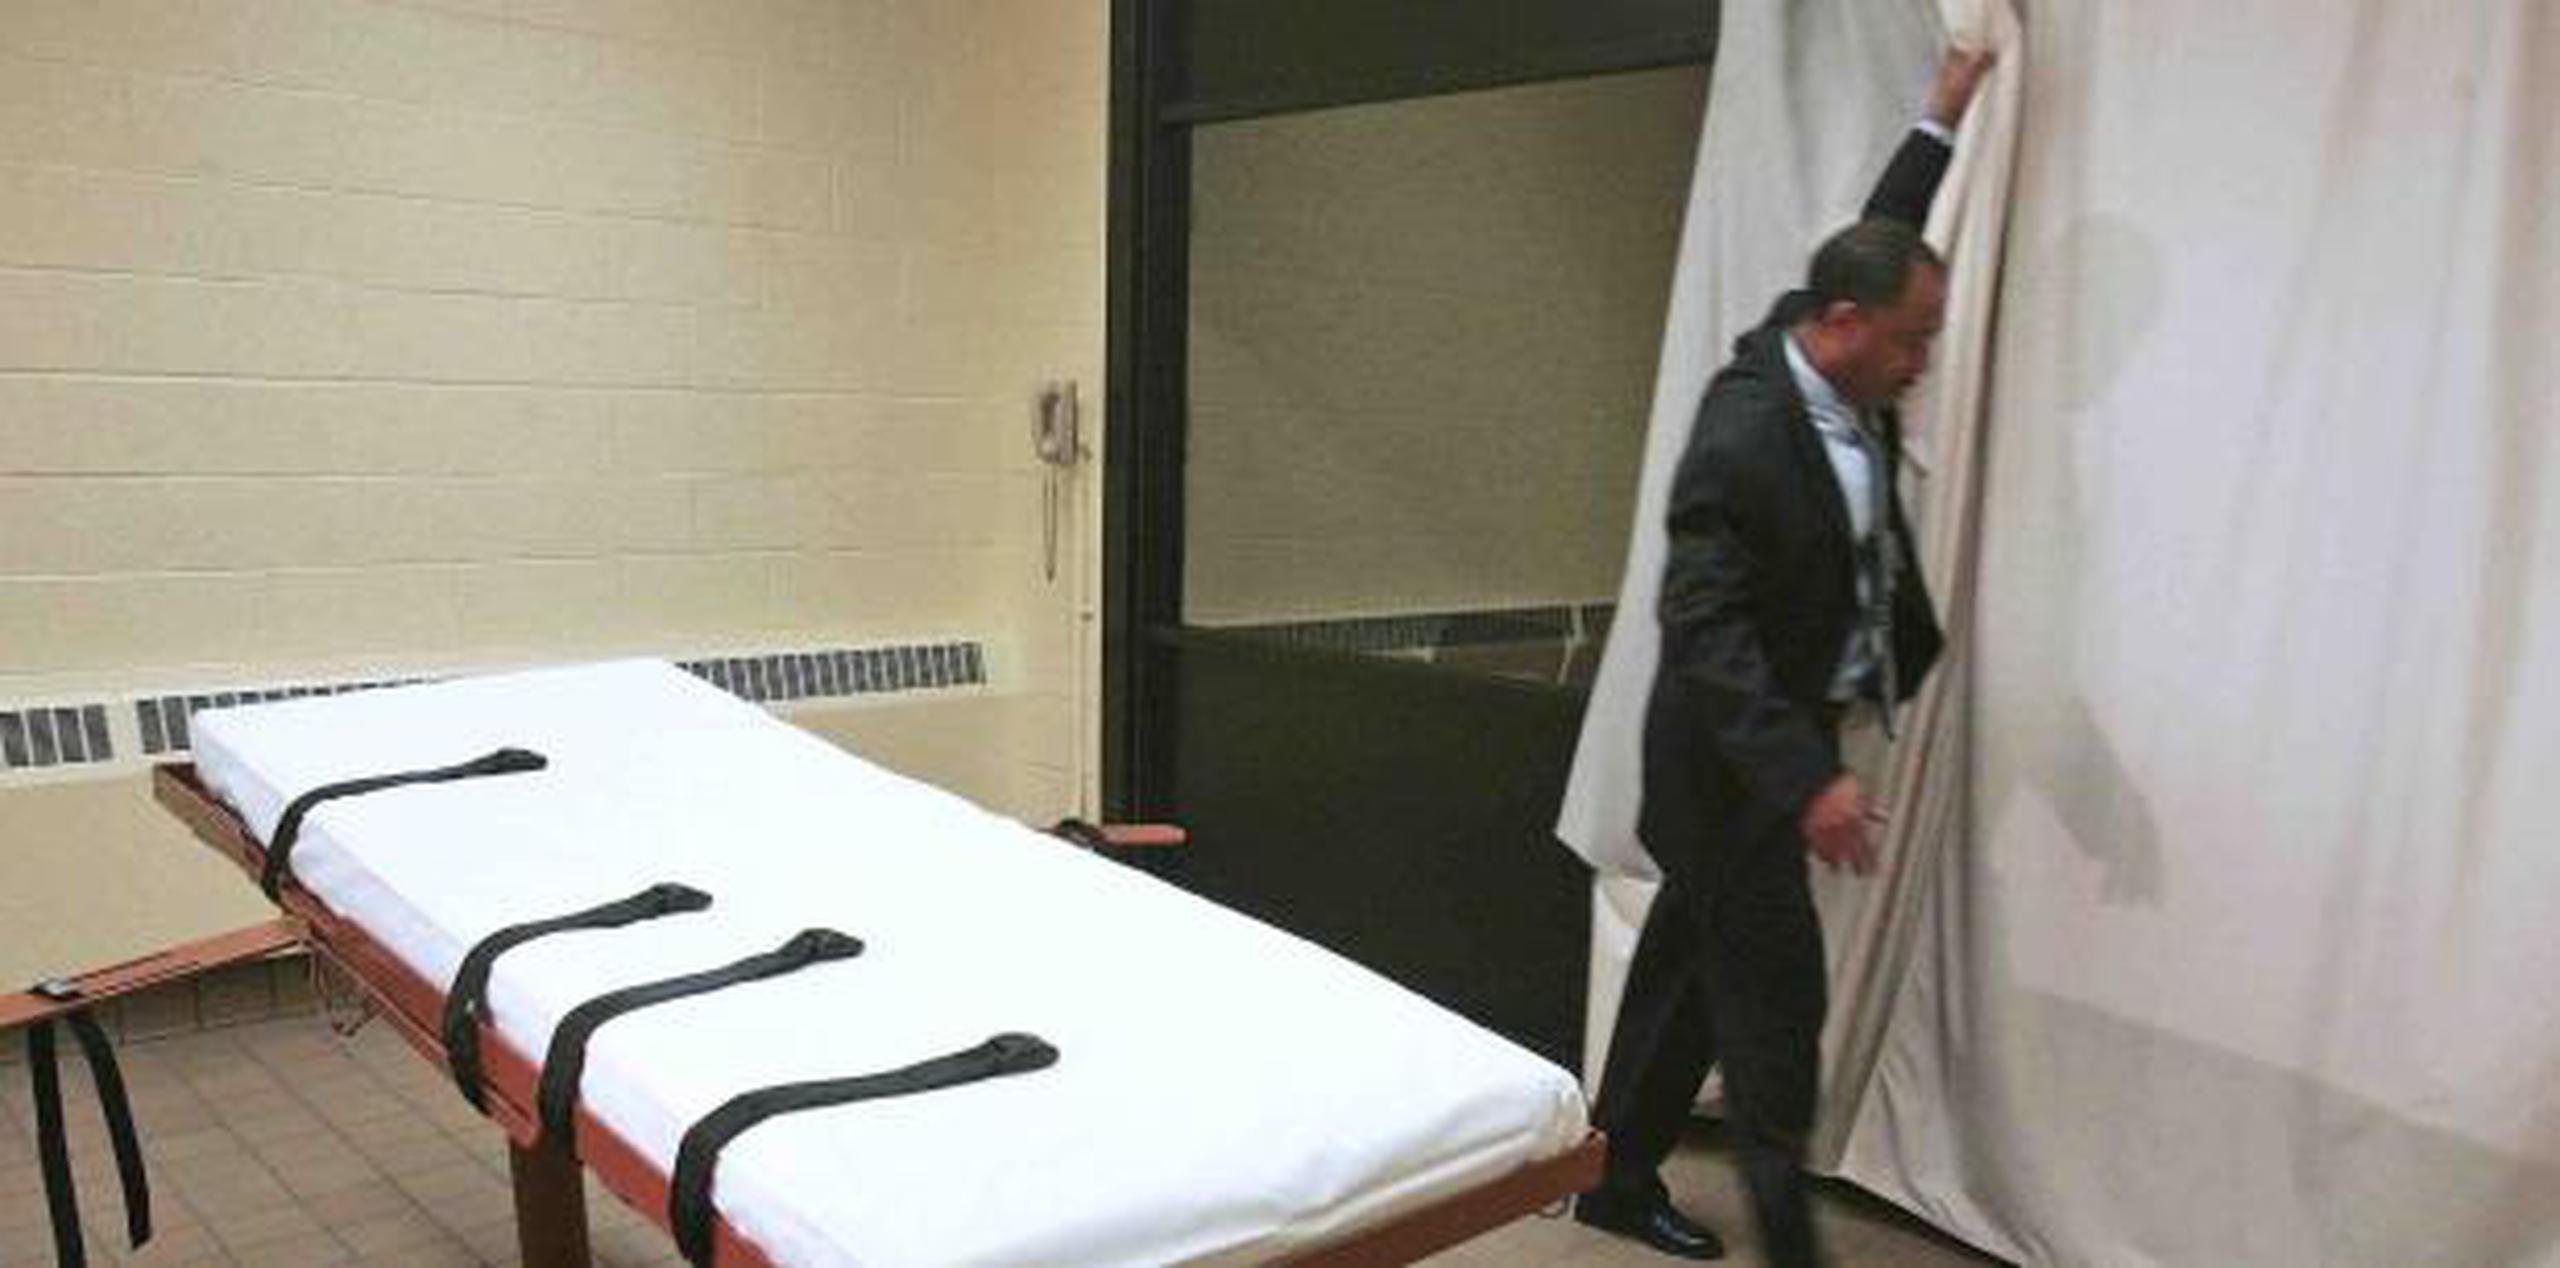 Está previsto que el gobernador Gavin Newsom haga el anuncio ante el Legislativo de California en un discurso en el que afirmará que la pena de muerte ha sido "un fracaso". (AP)